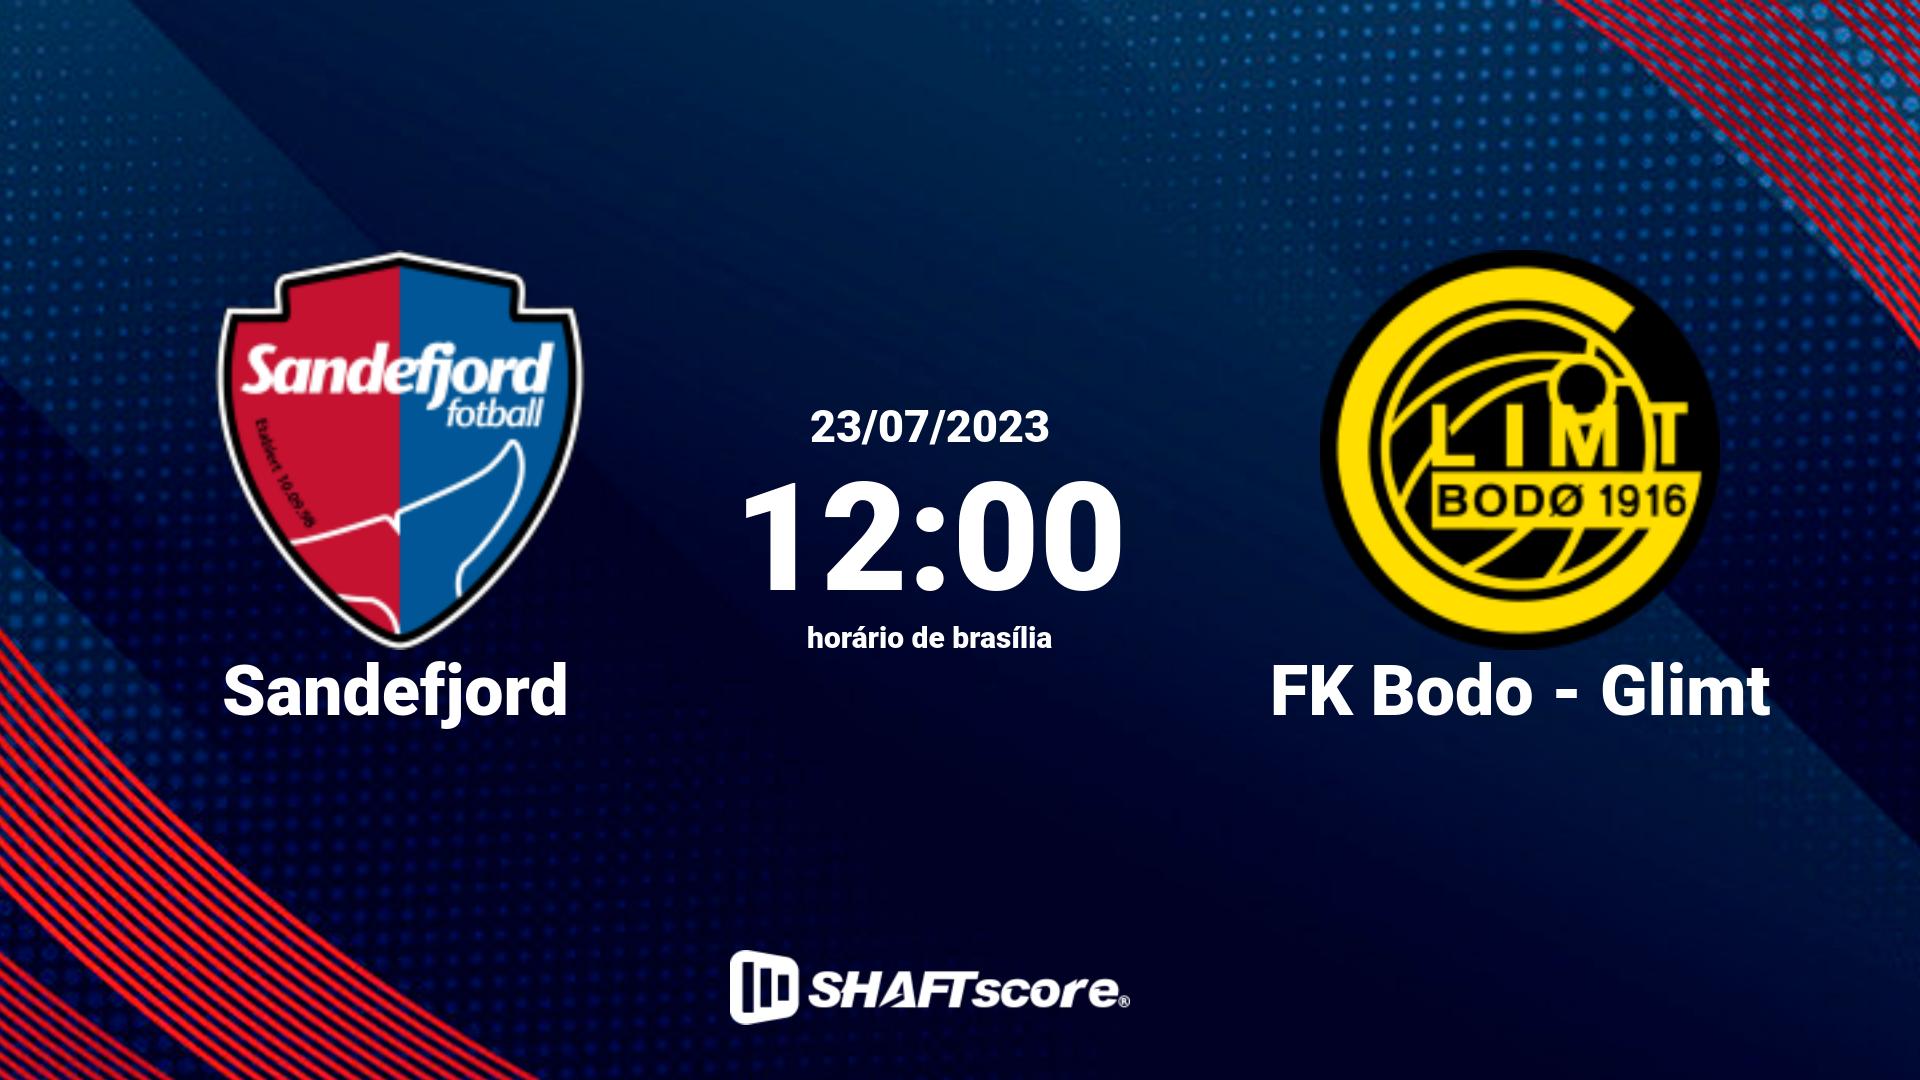 Estatísticas do jogo Sandefjord vs FK Bodo - Glimt 23.07 12:00